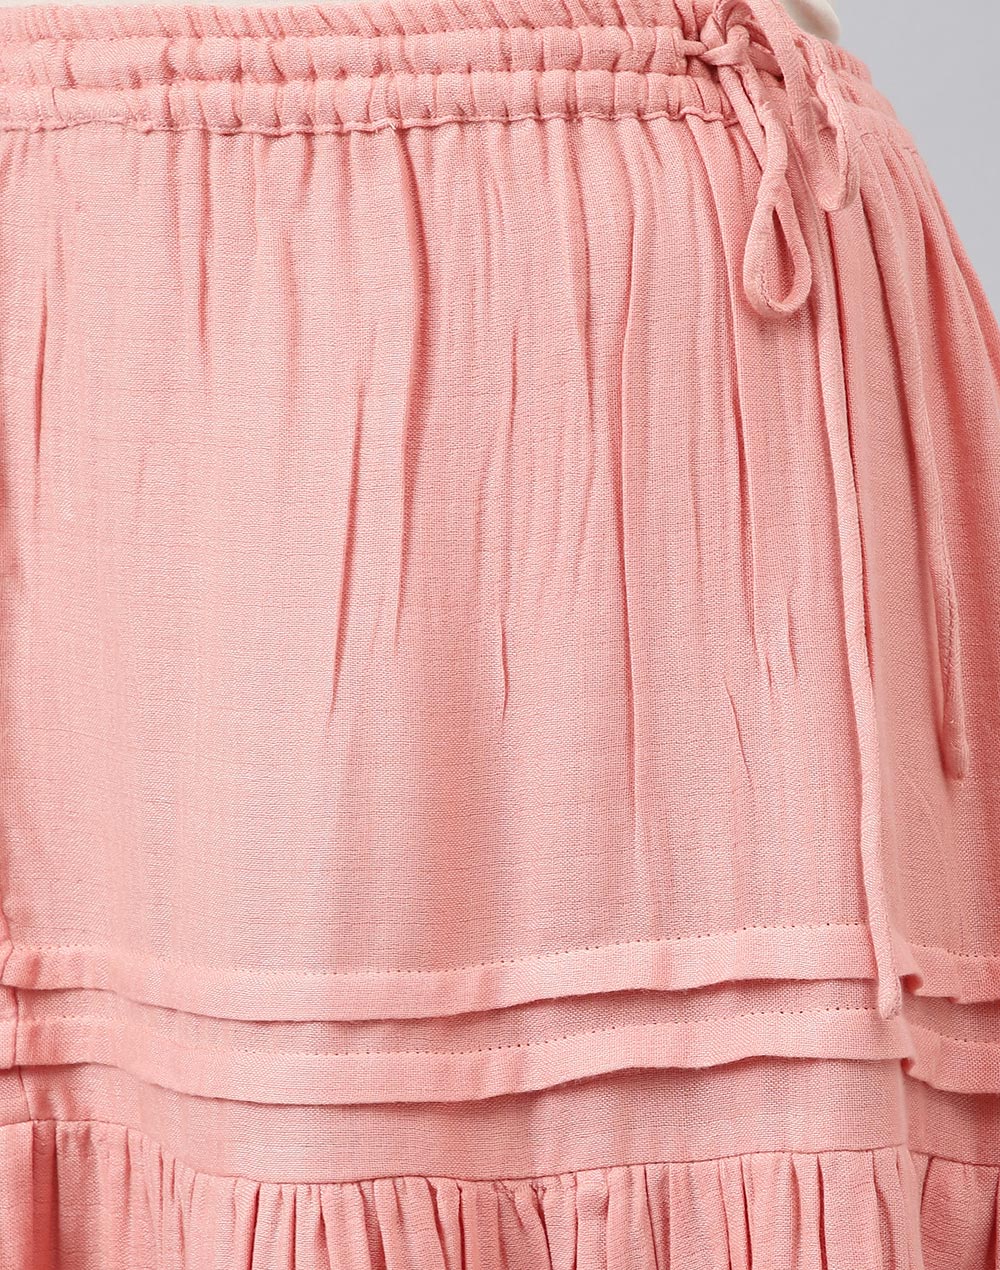 Pink Cotton Calf Length Midi Skirt